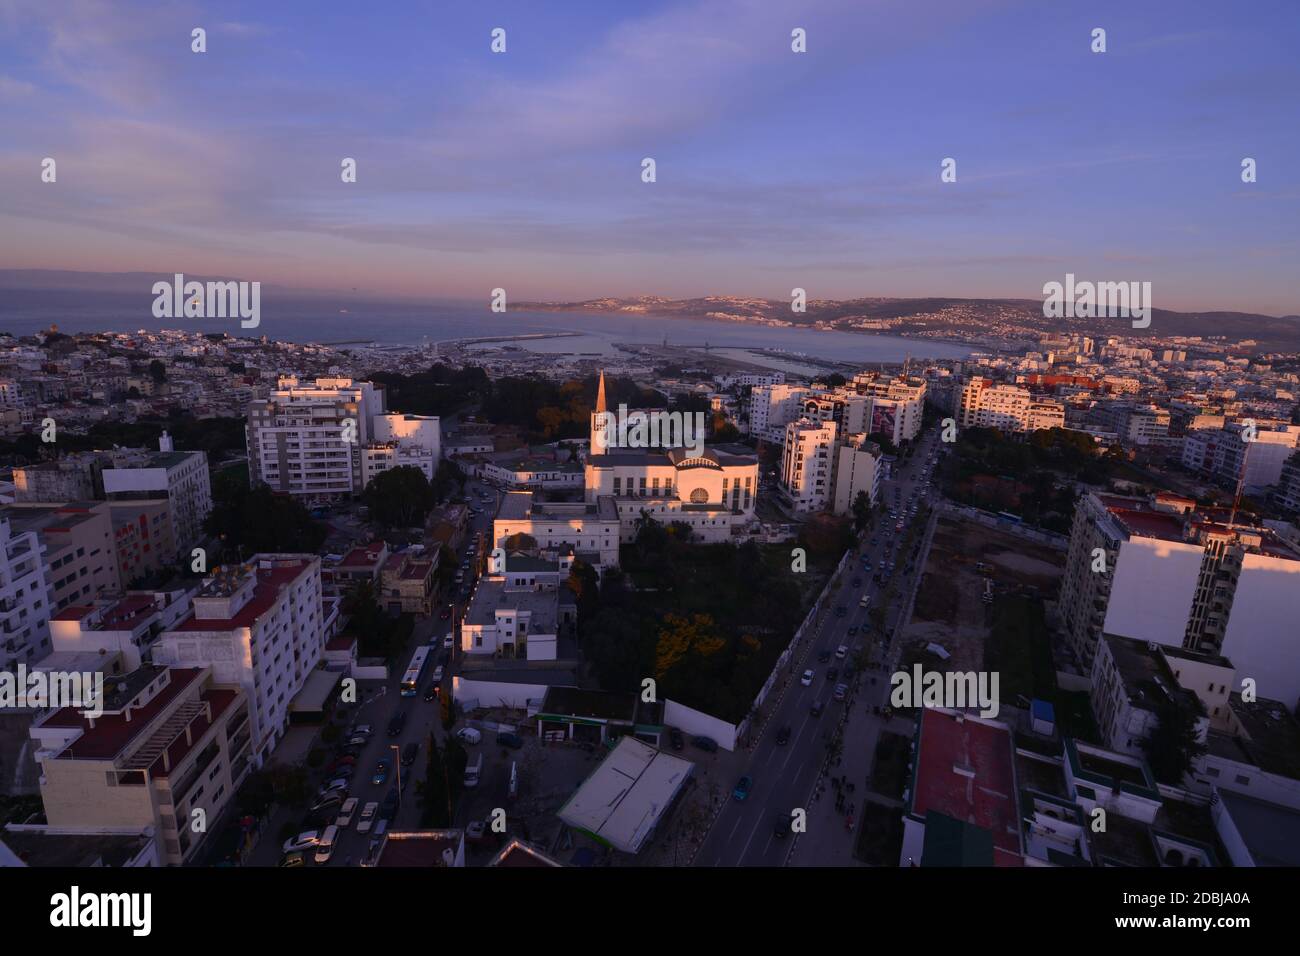 Une photographie aérienne de la ville de Tanger au Maroc. Banque D'Images